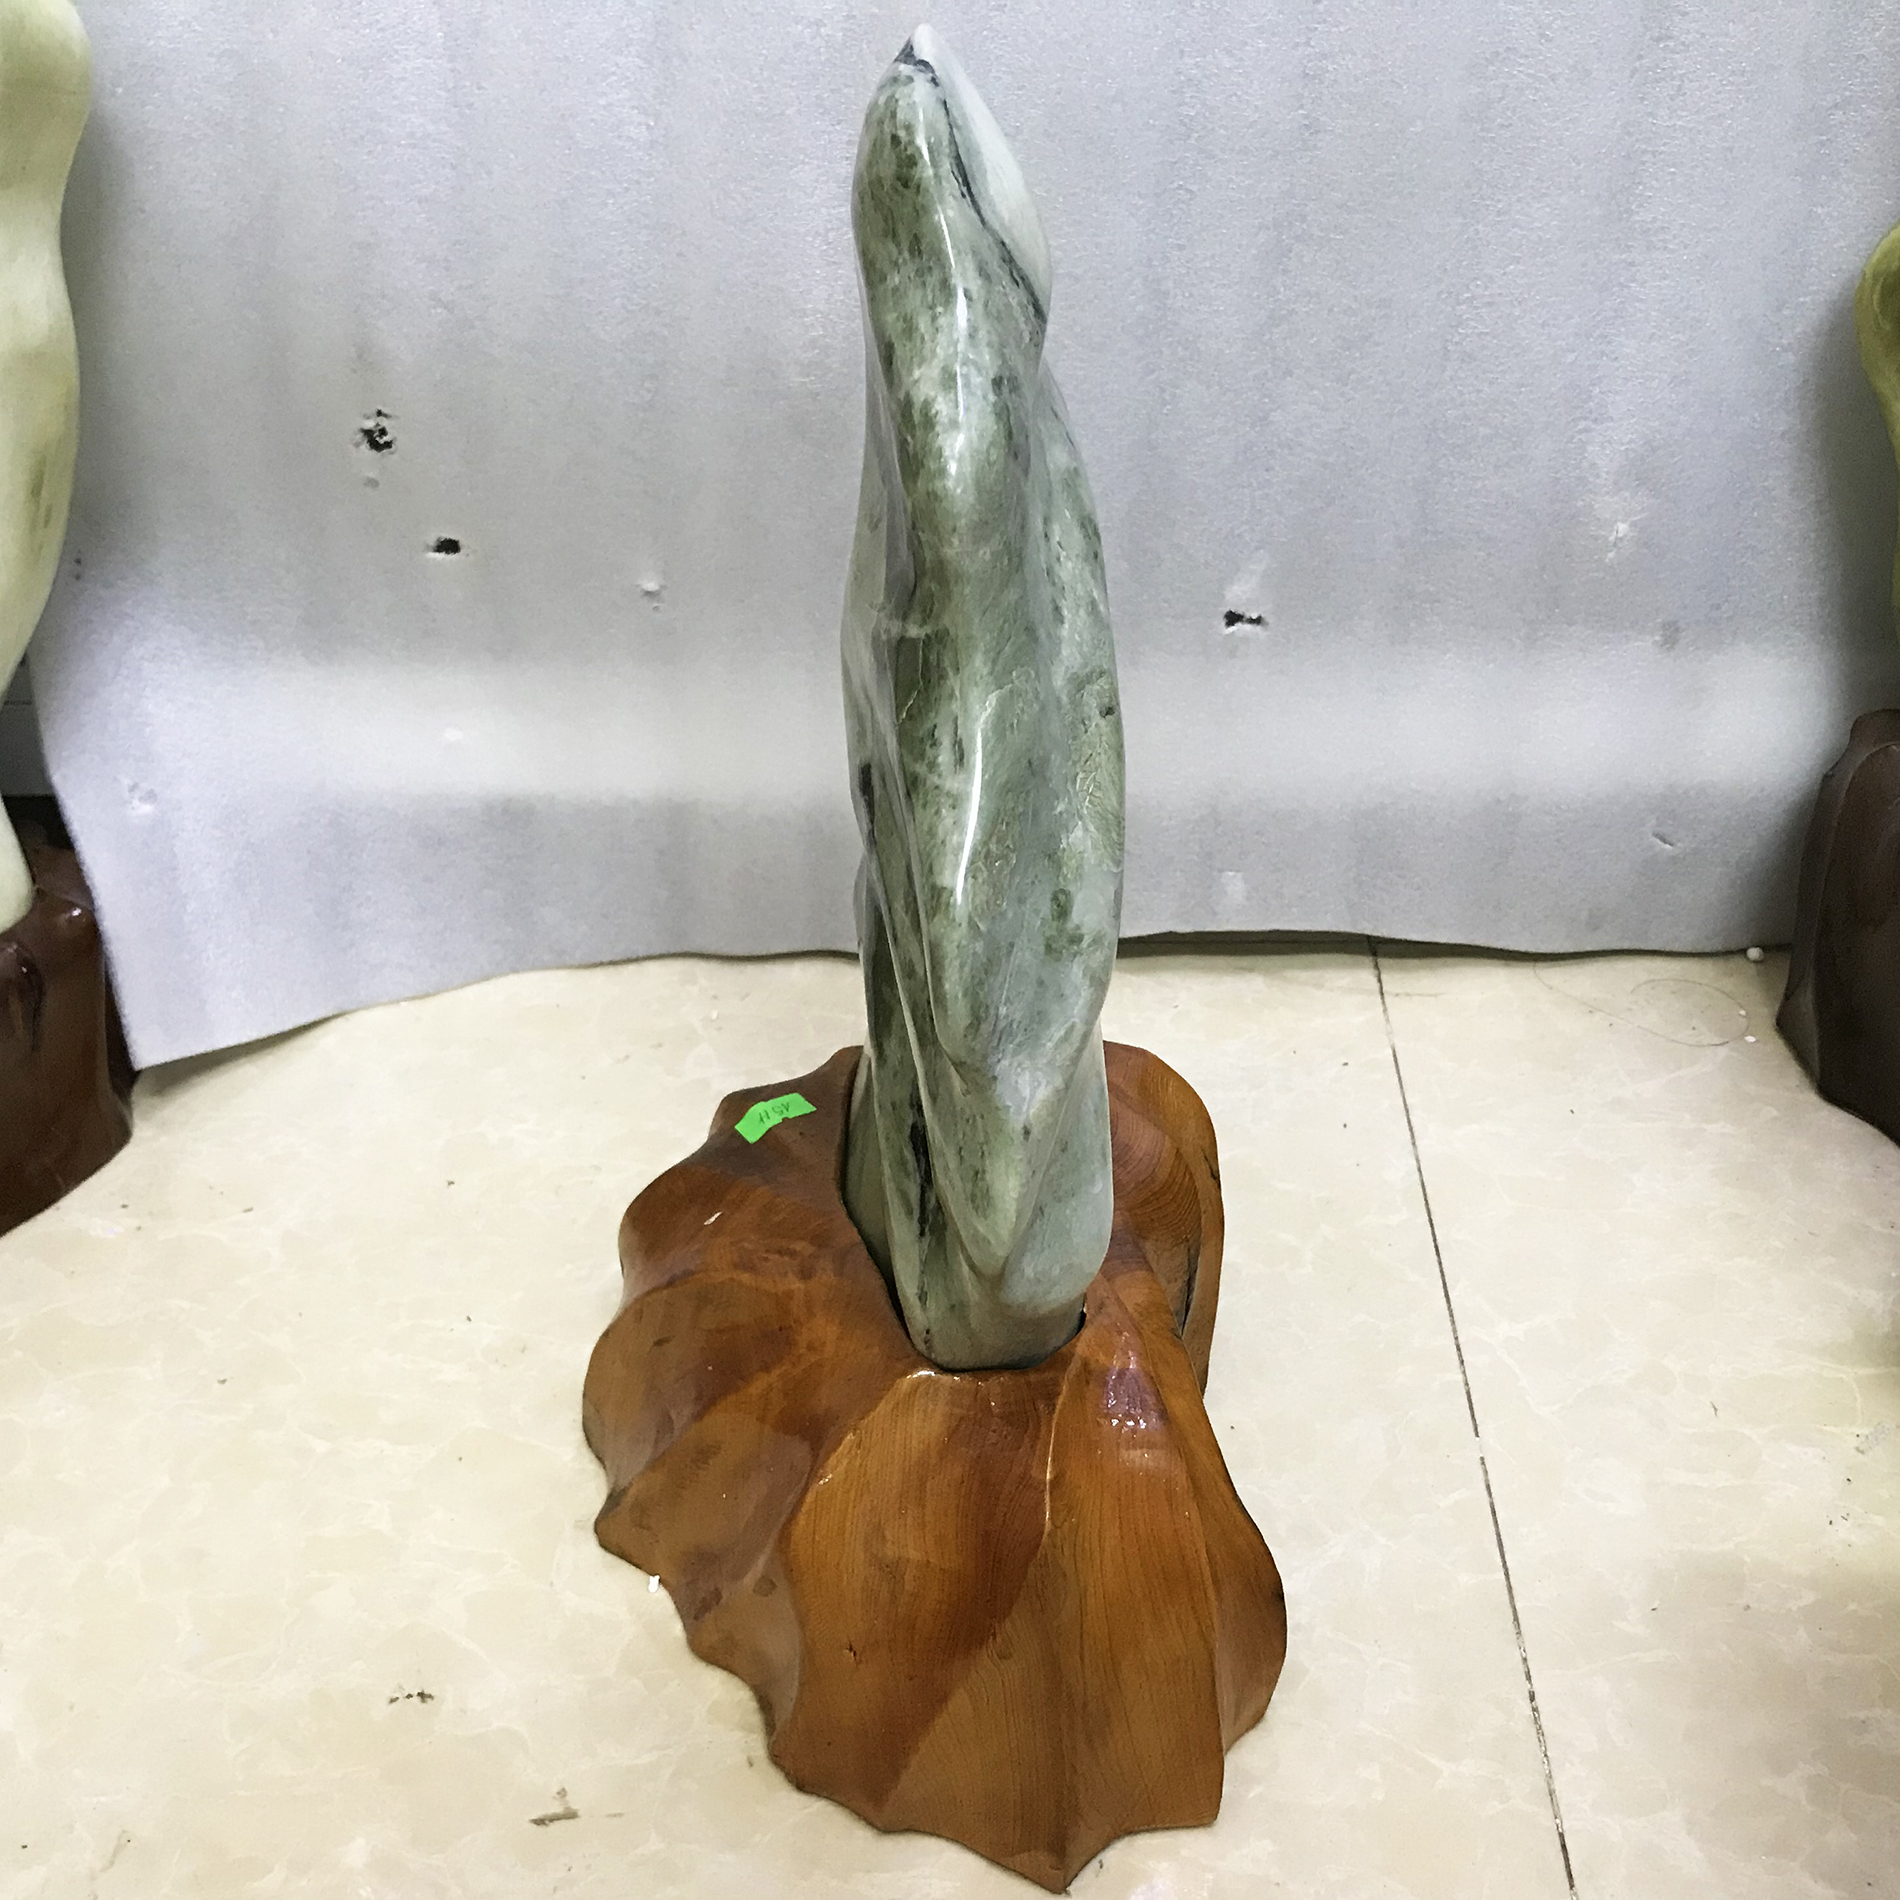 Cây đá phong thủy tự nhiên cao 40cm nặng 7kg chất ngọc serpentine xanh đậm cho mệnh Hỏa và Mộc